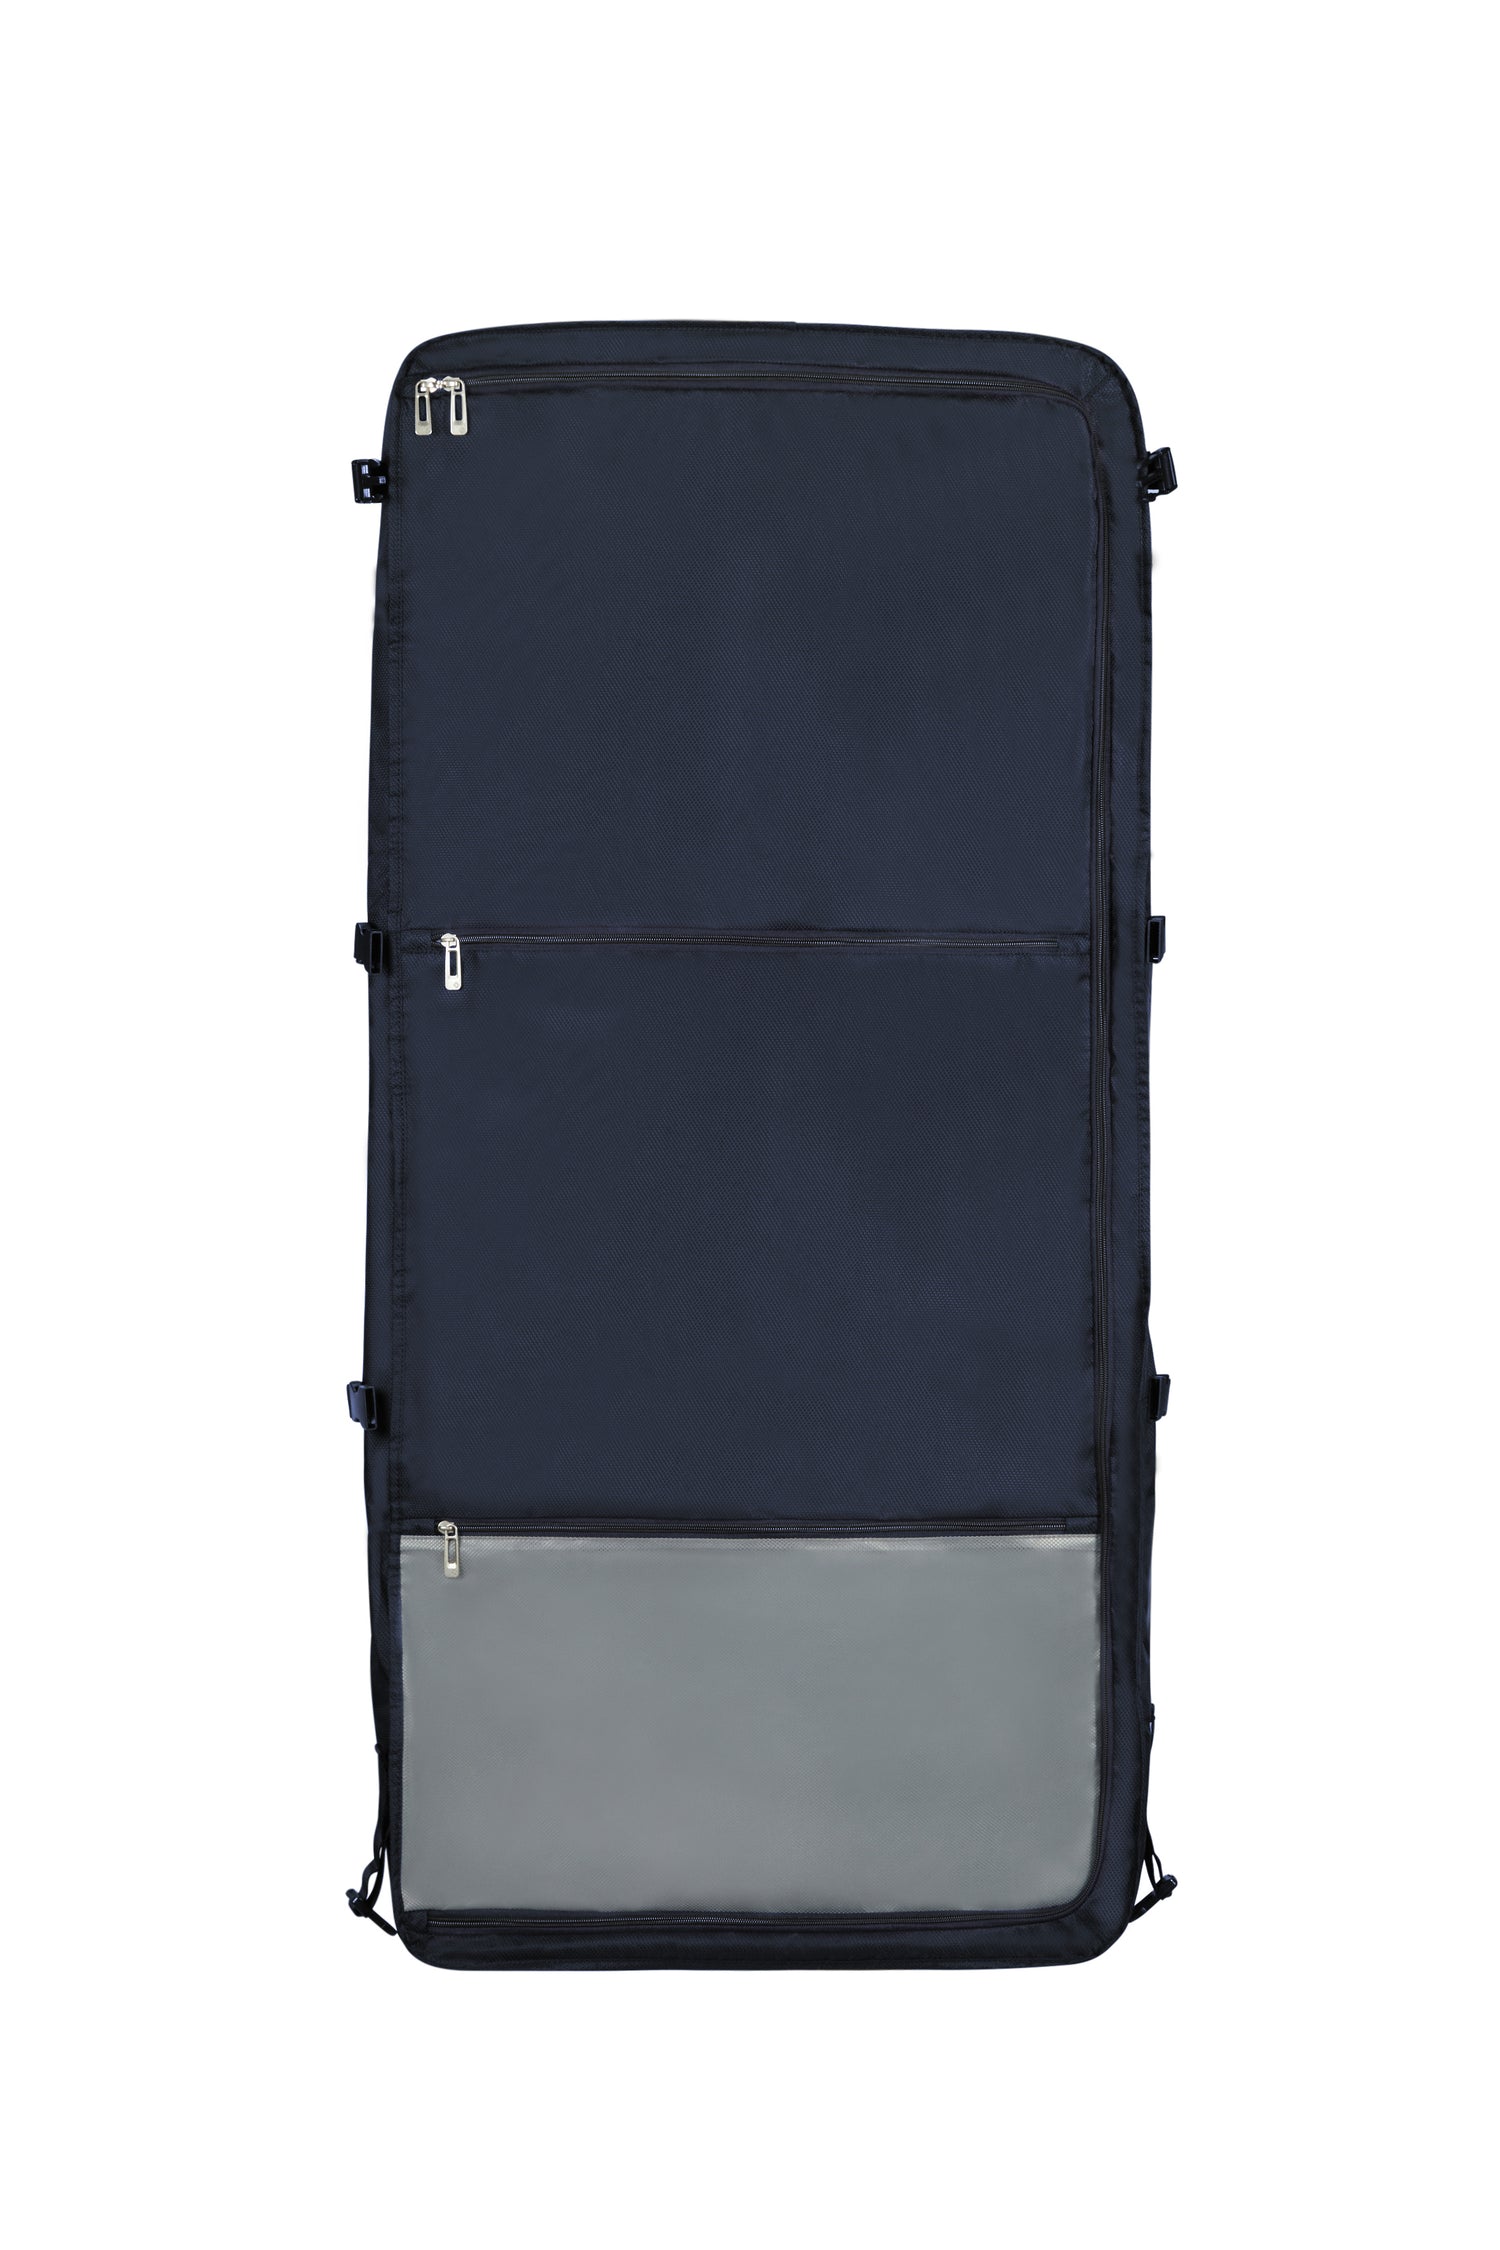 Samsonite Respark Garment Bag Tri-Fold